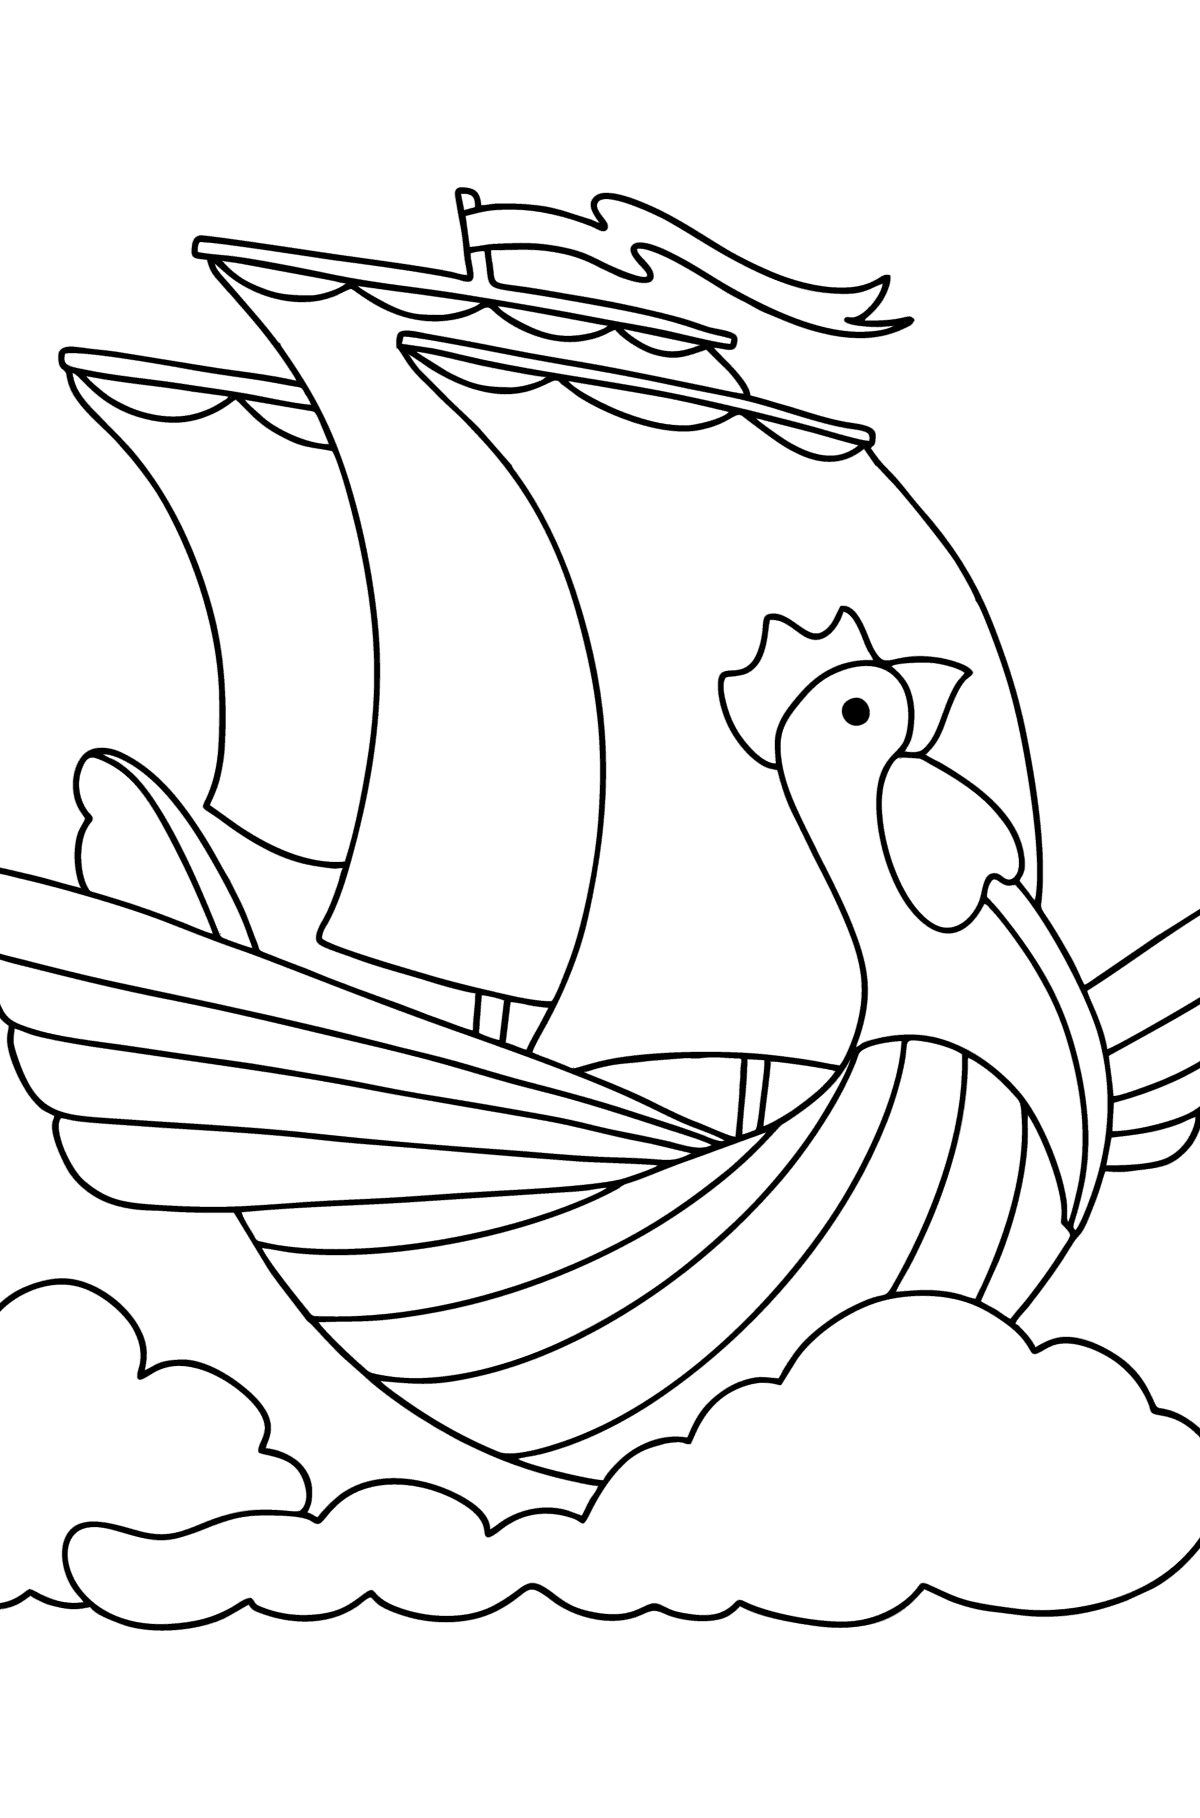 Раскраска Летучий корабль - Картинки для Детей